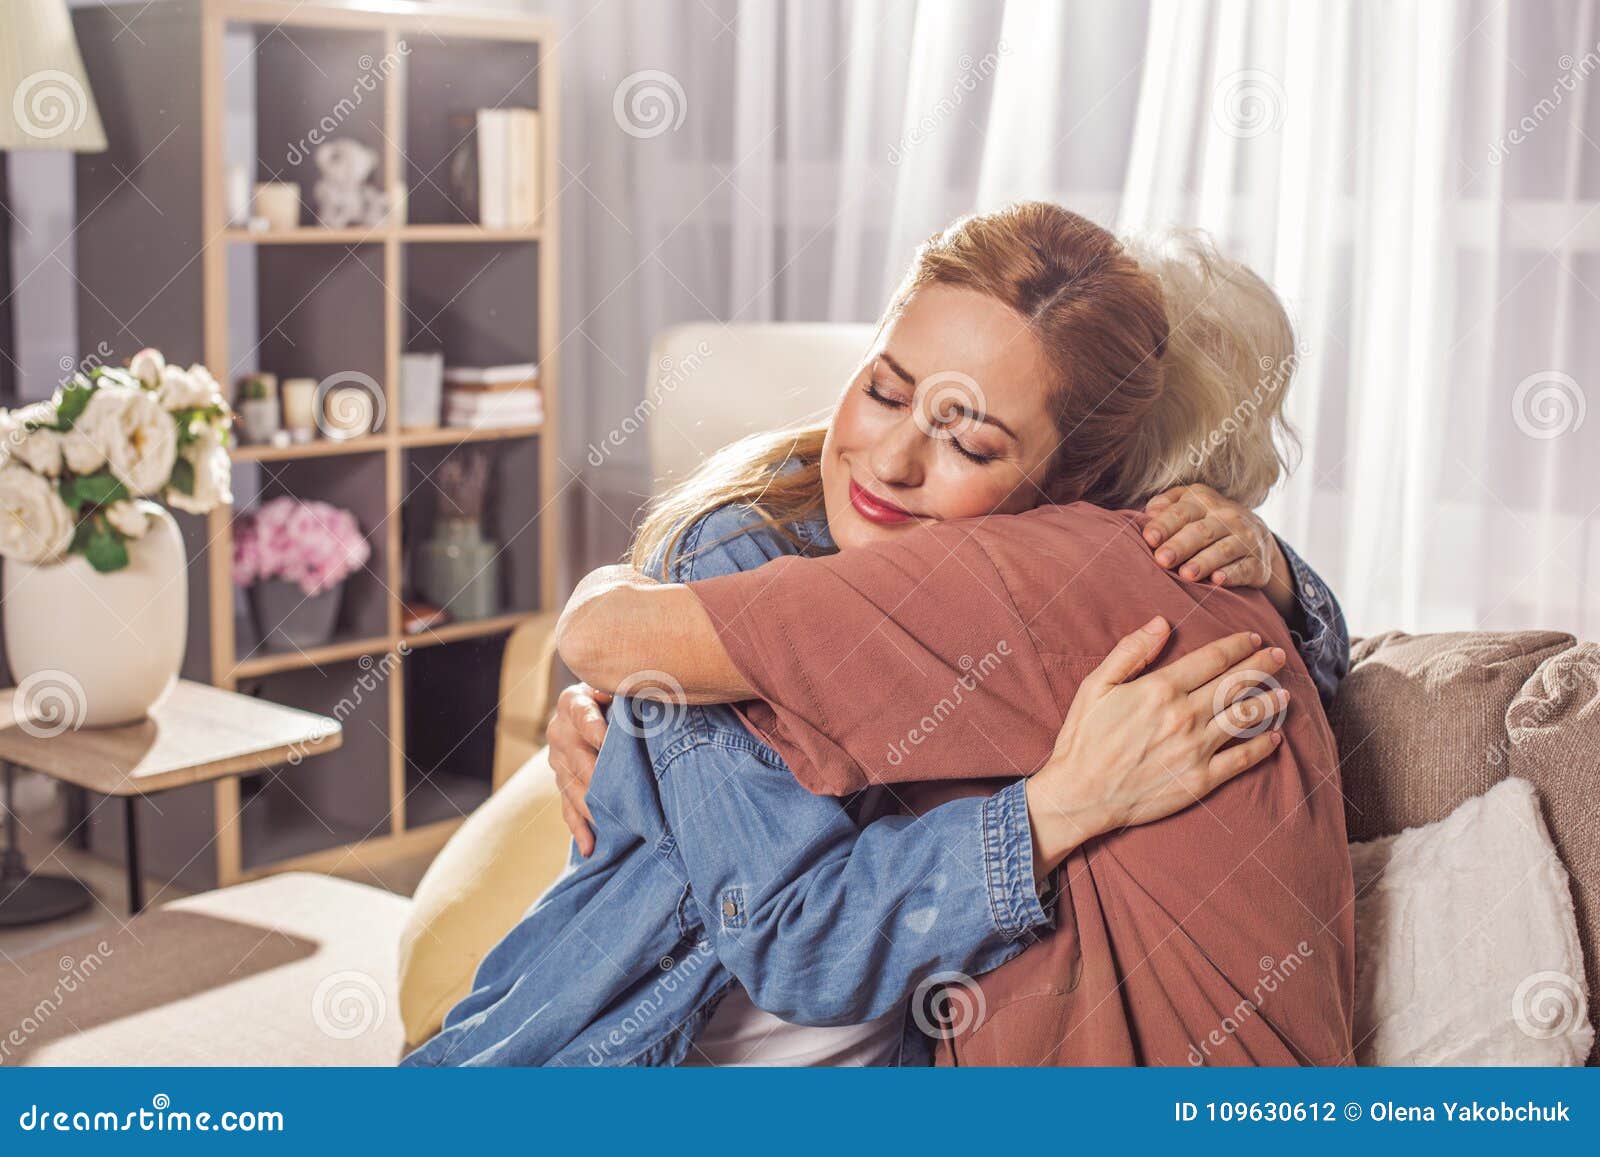 glad girl hugging granny in room